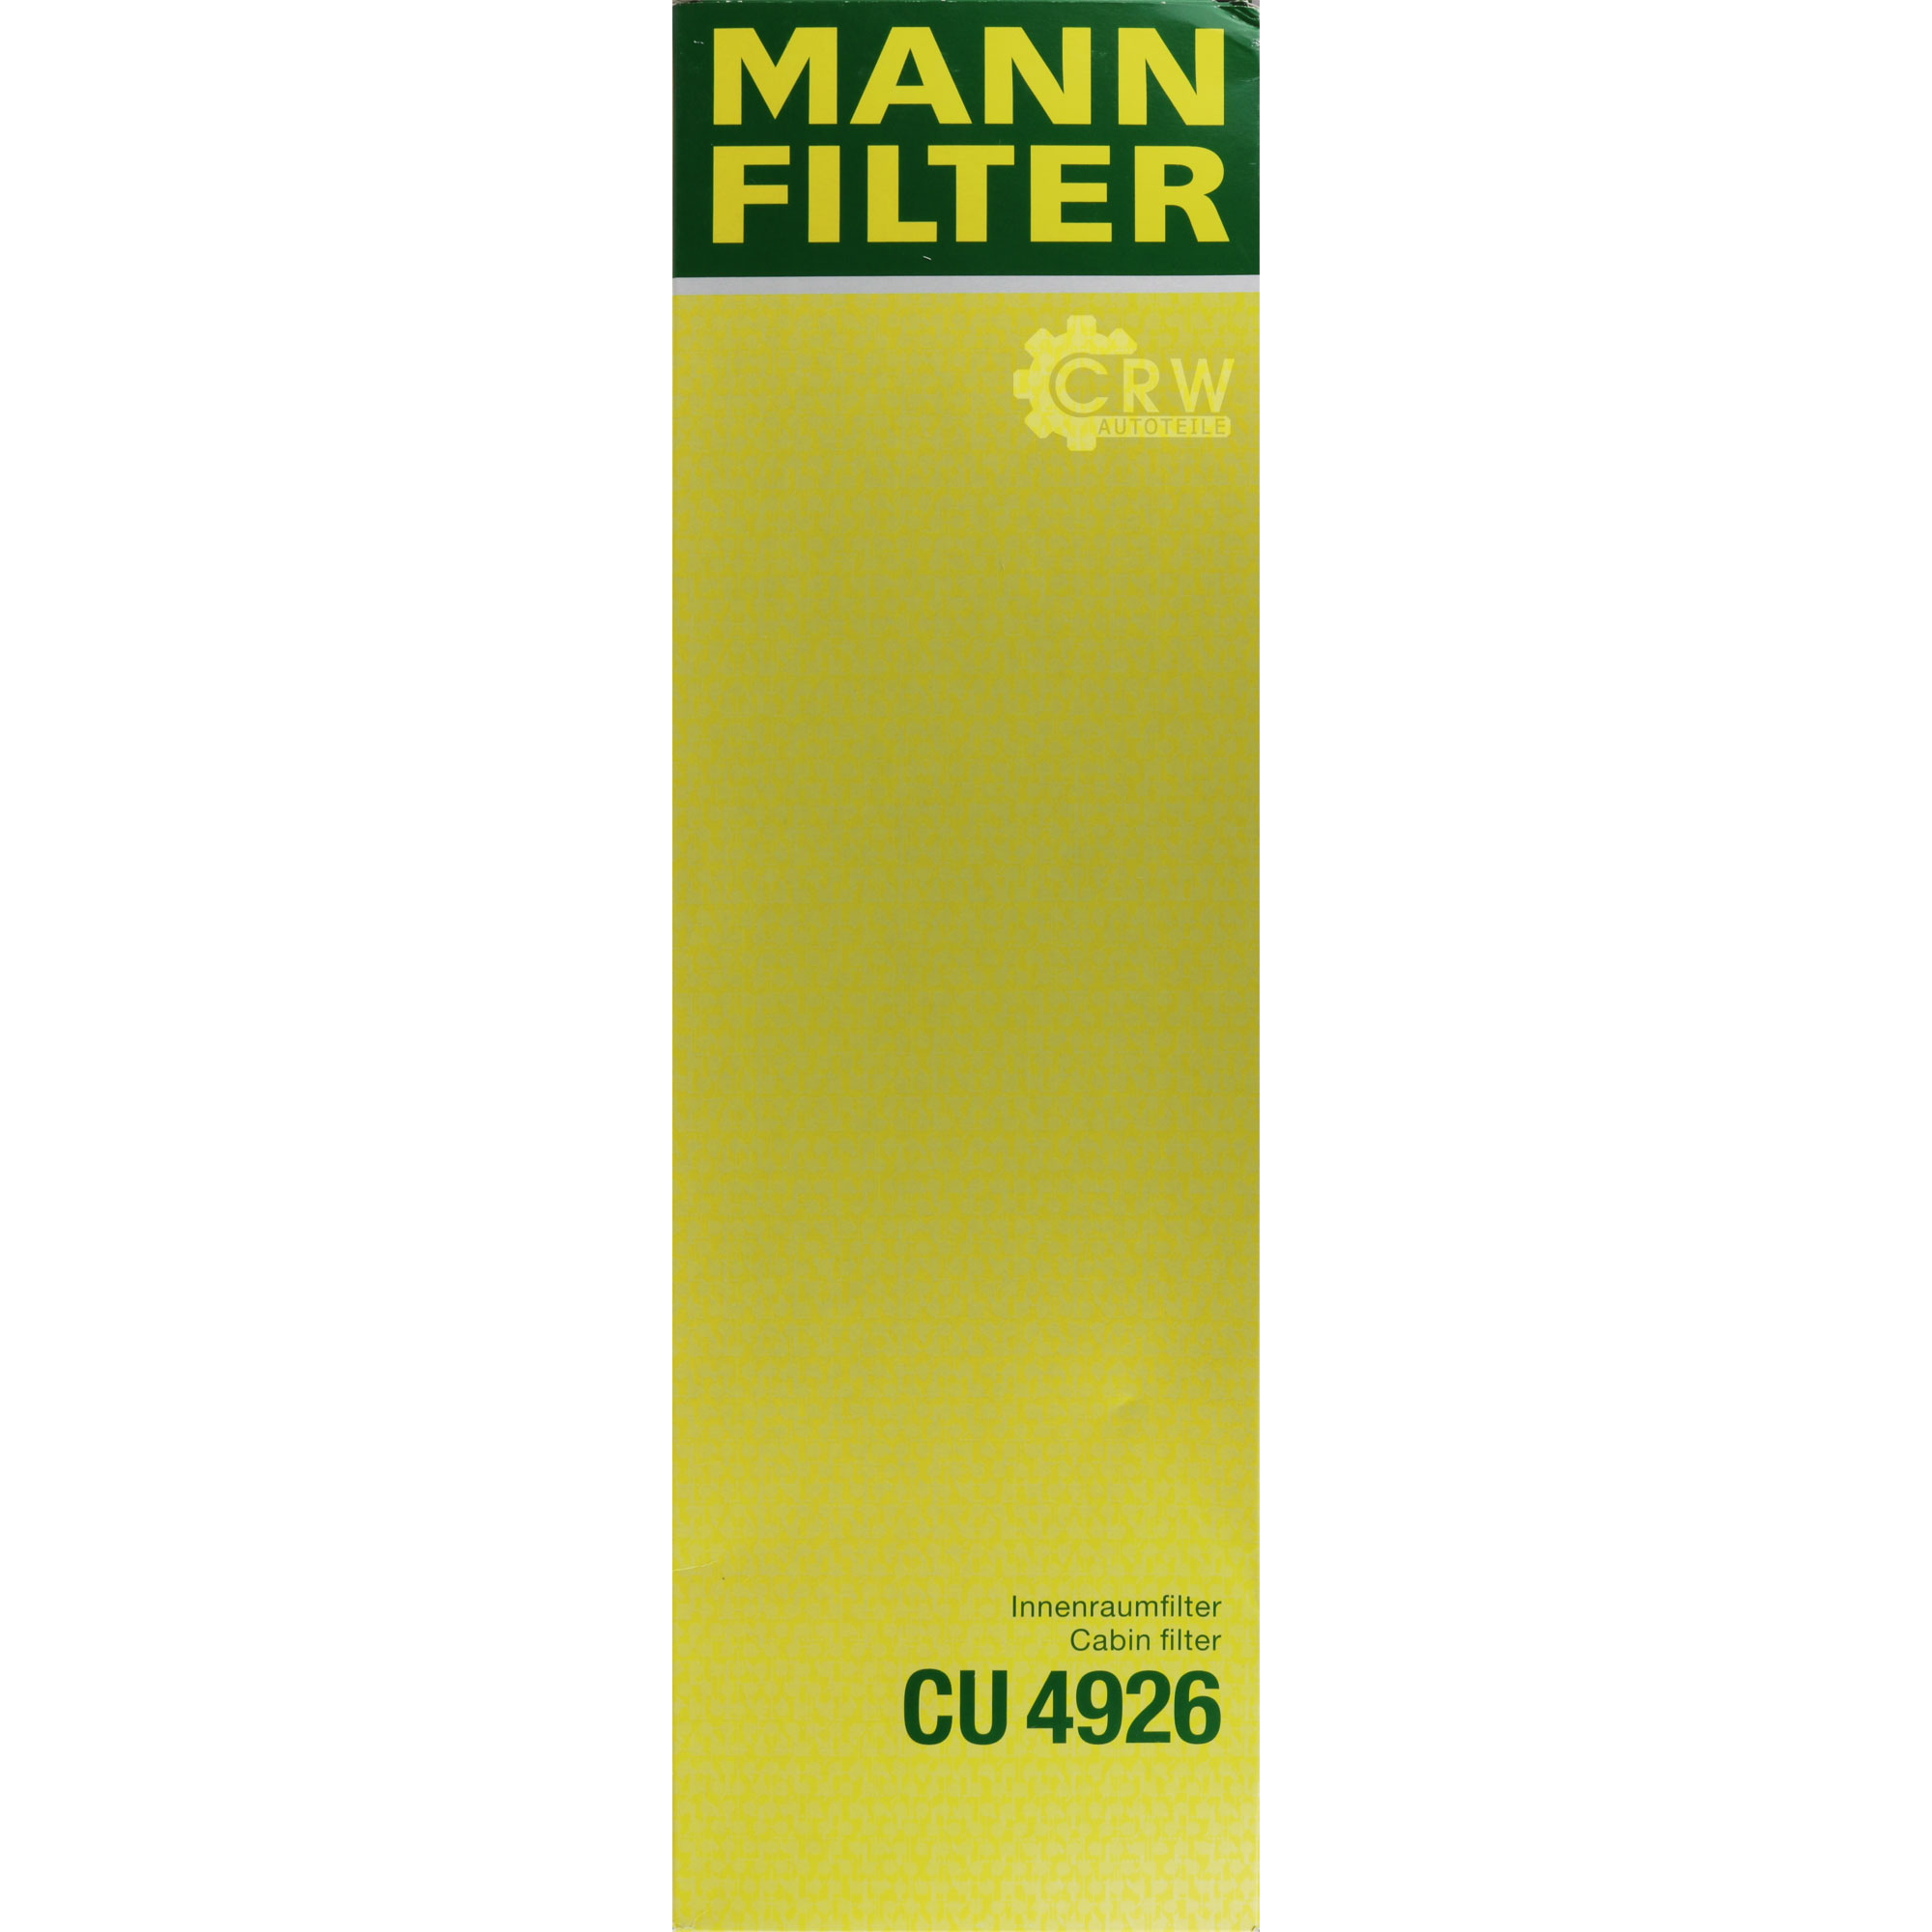 MANN-FILTER Filter Innenraumluft Pollenfilter Innenraumfilter CU 4926